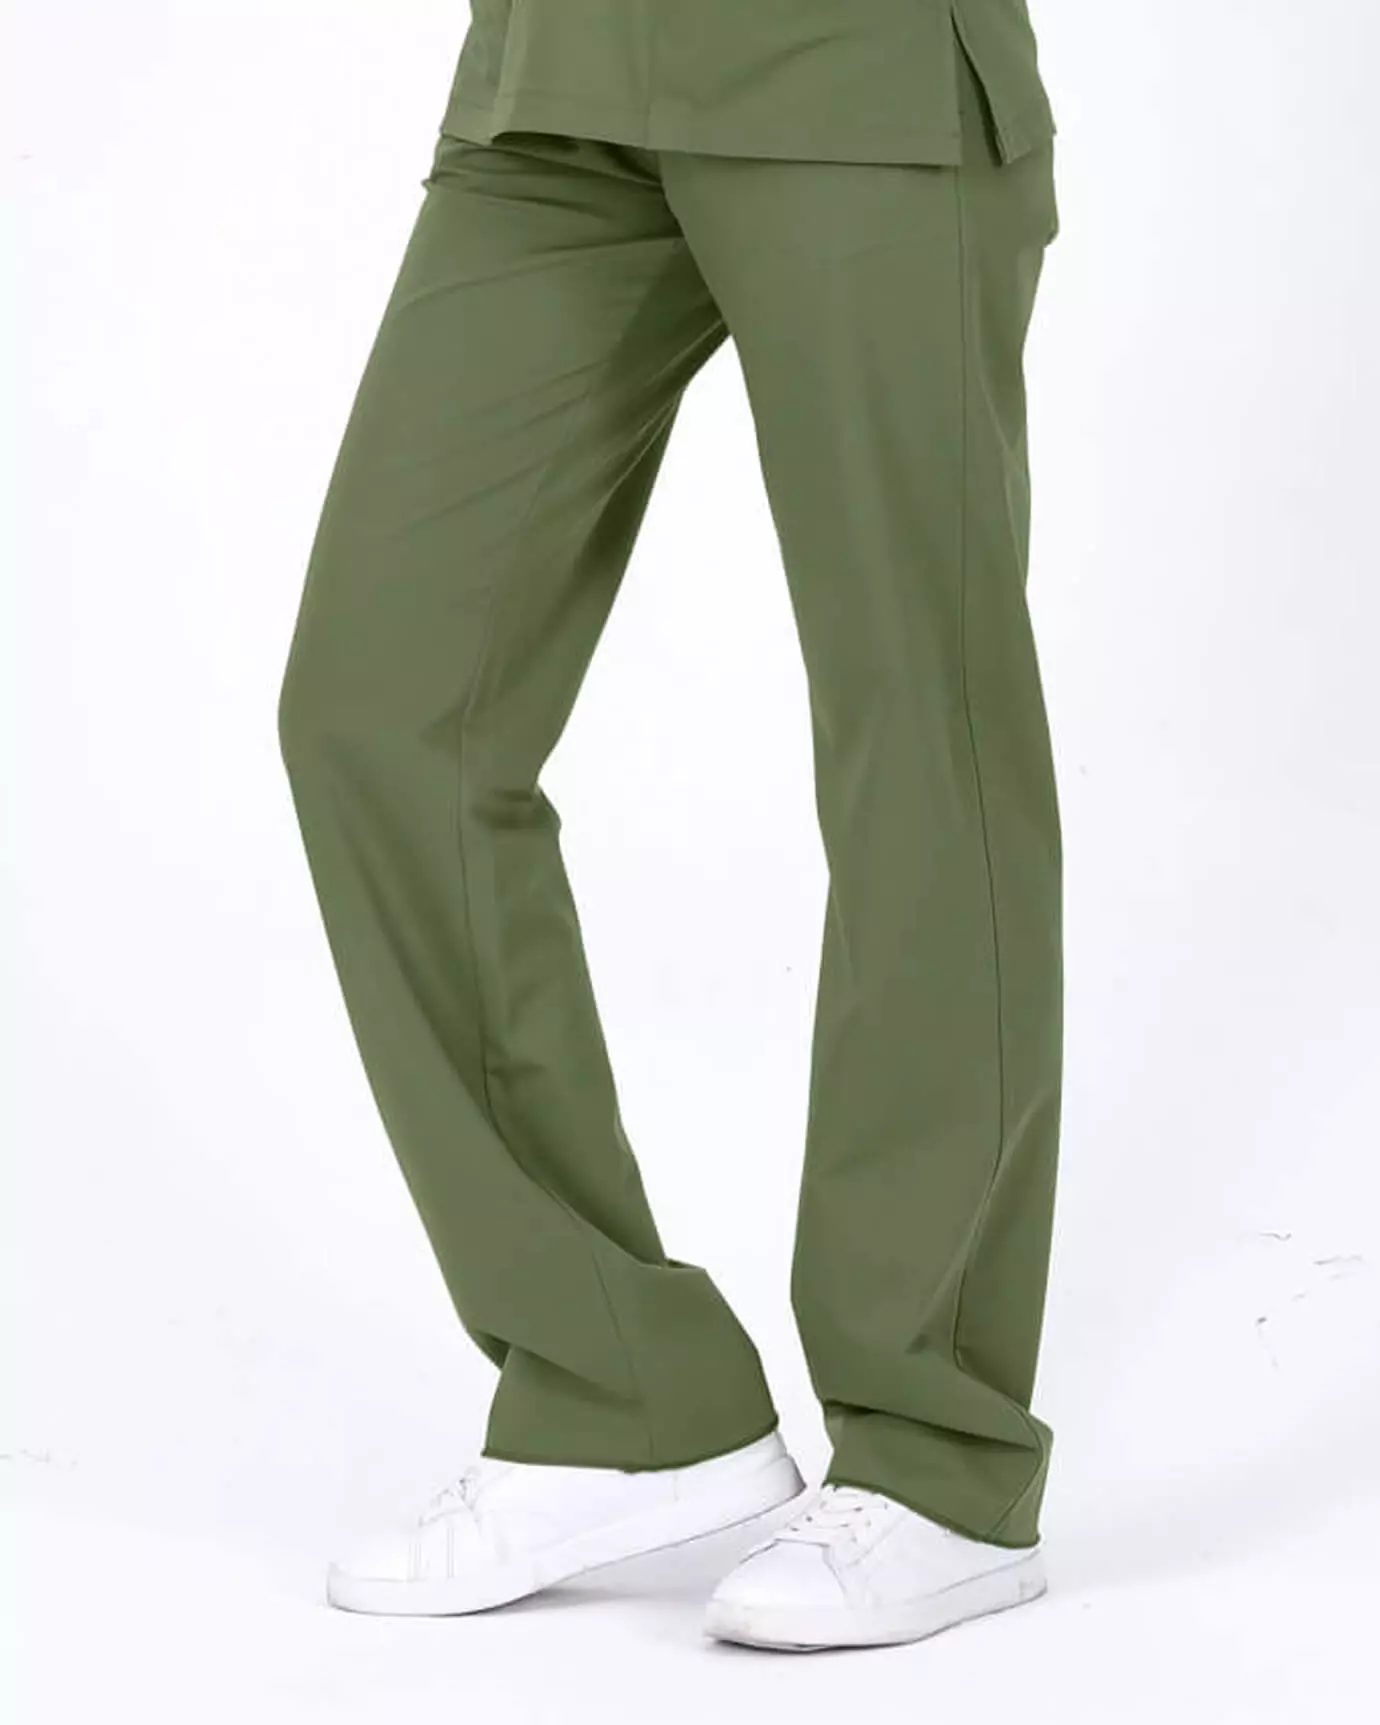 Kadın Hemşire Forması Premium Mint Yeşili Pantolon